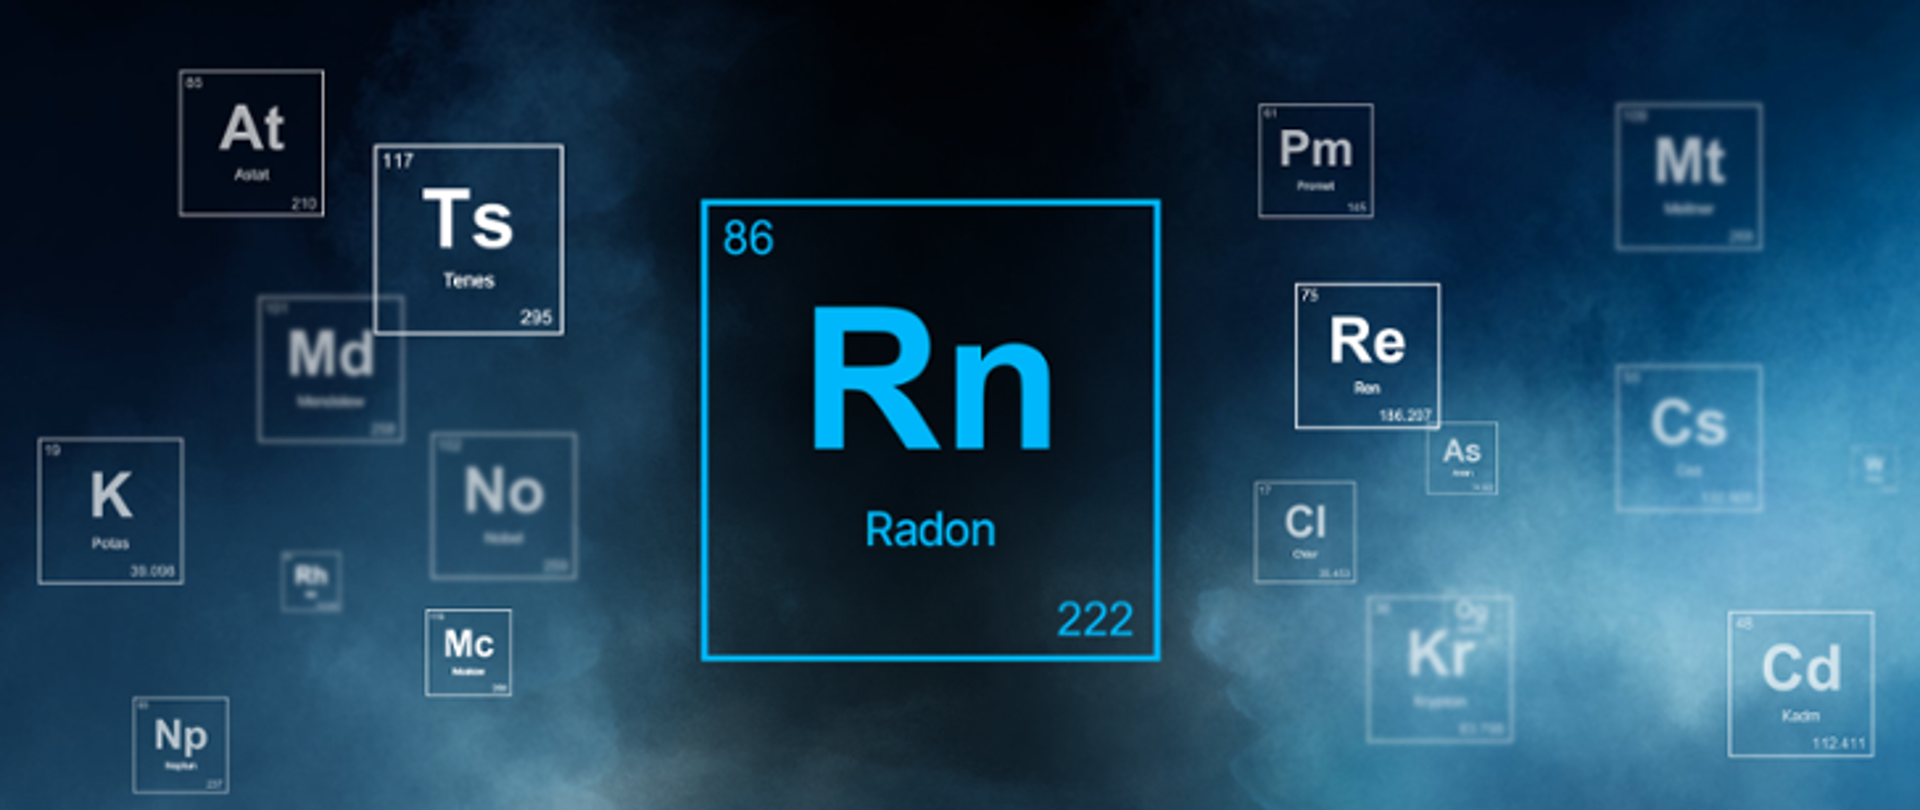 Na granatowym tle ikona pierwiastka chemicznego "Radon" zaczerpnięta z Tablicy Mendelejewa